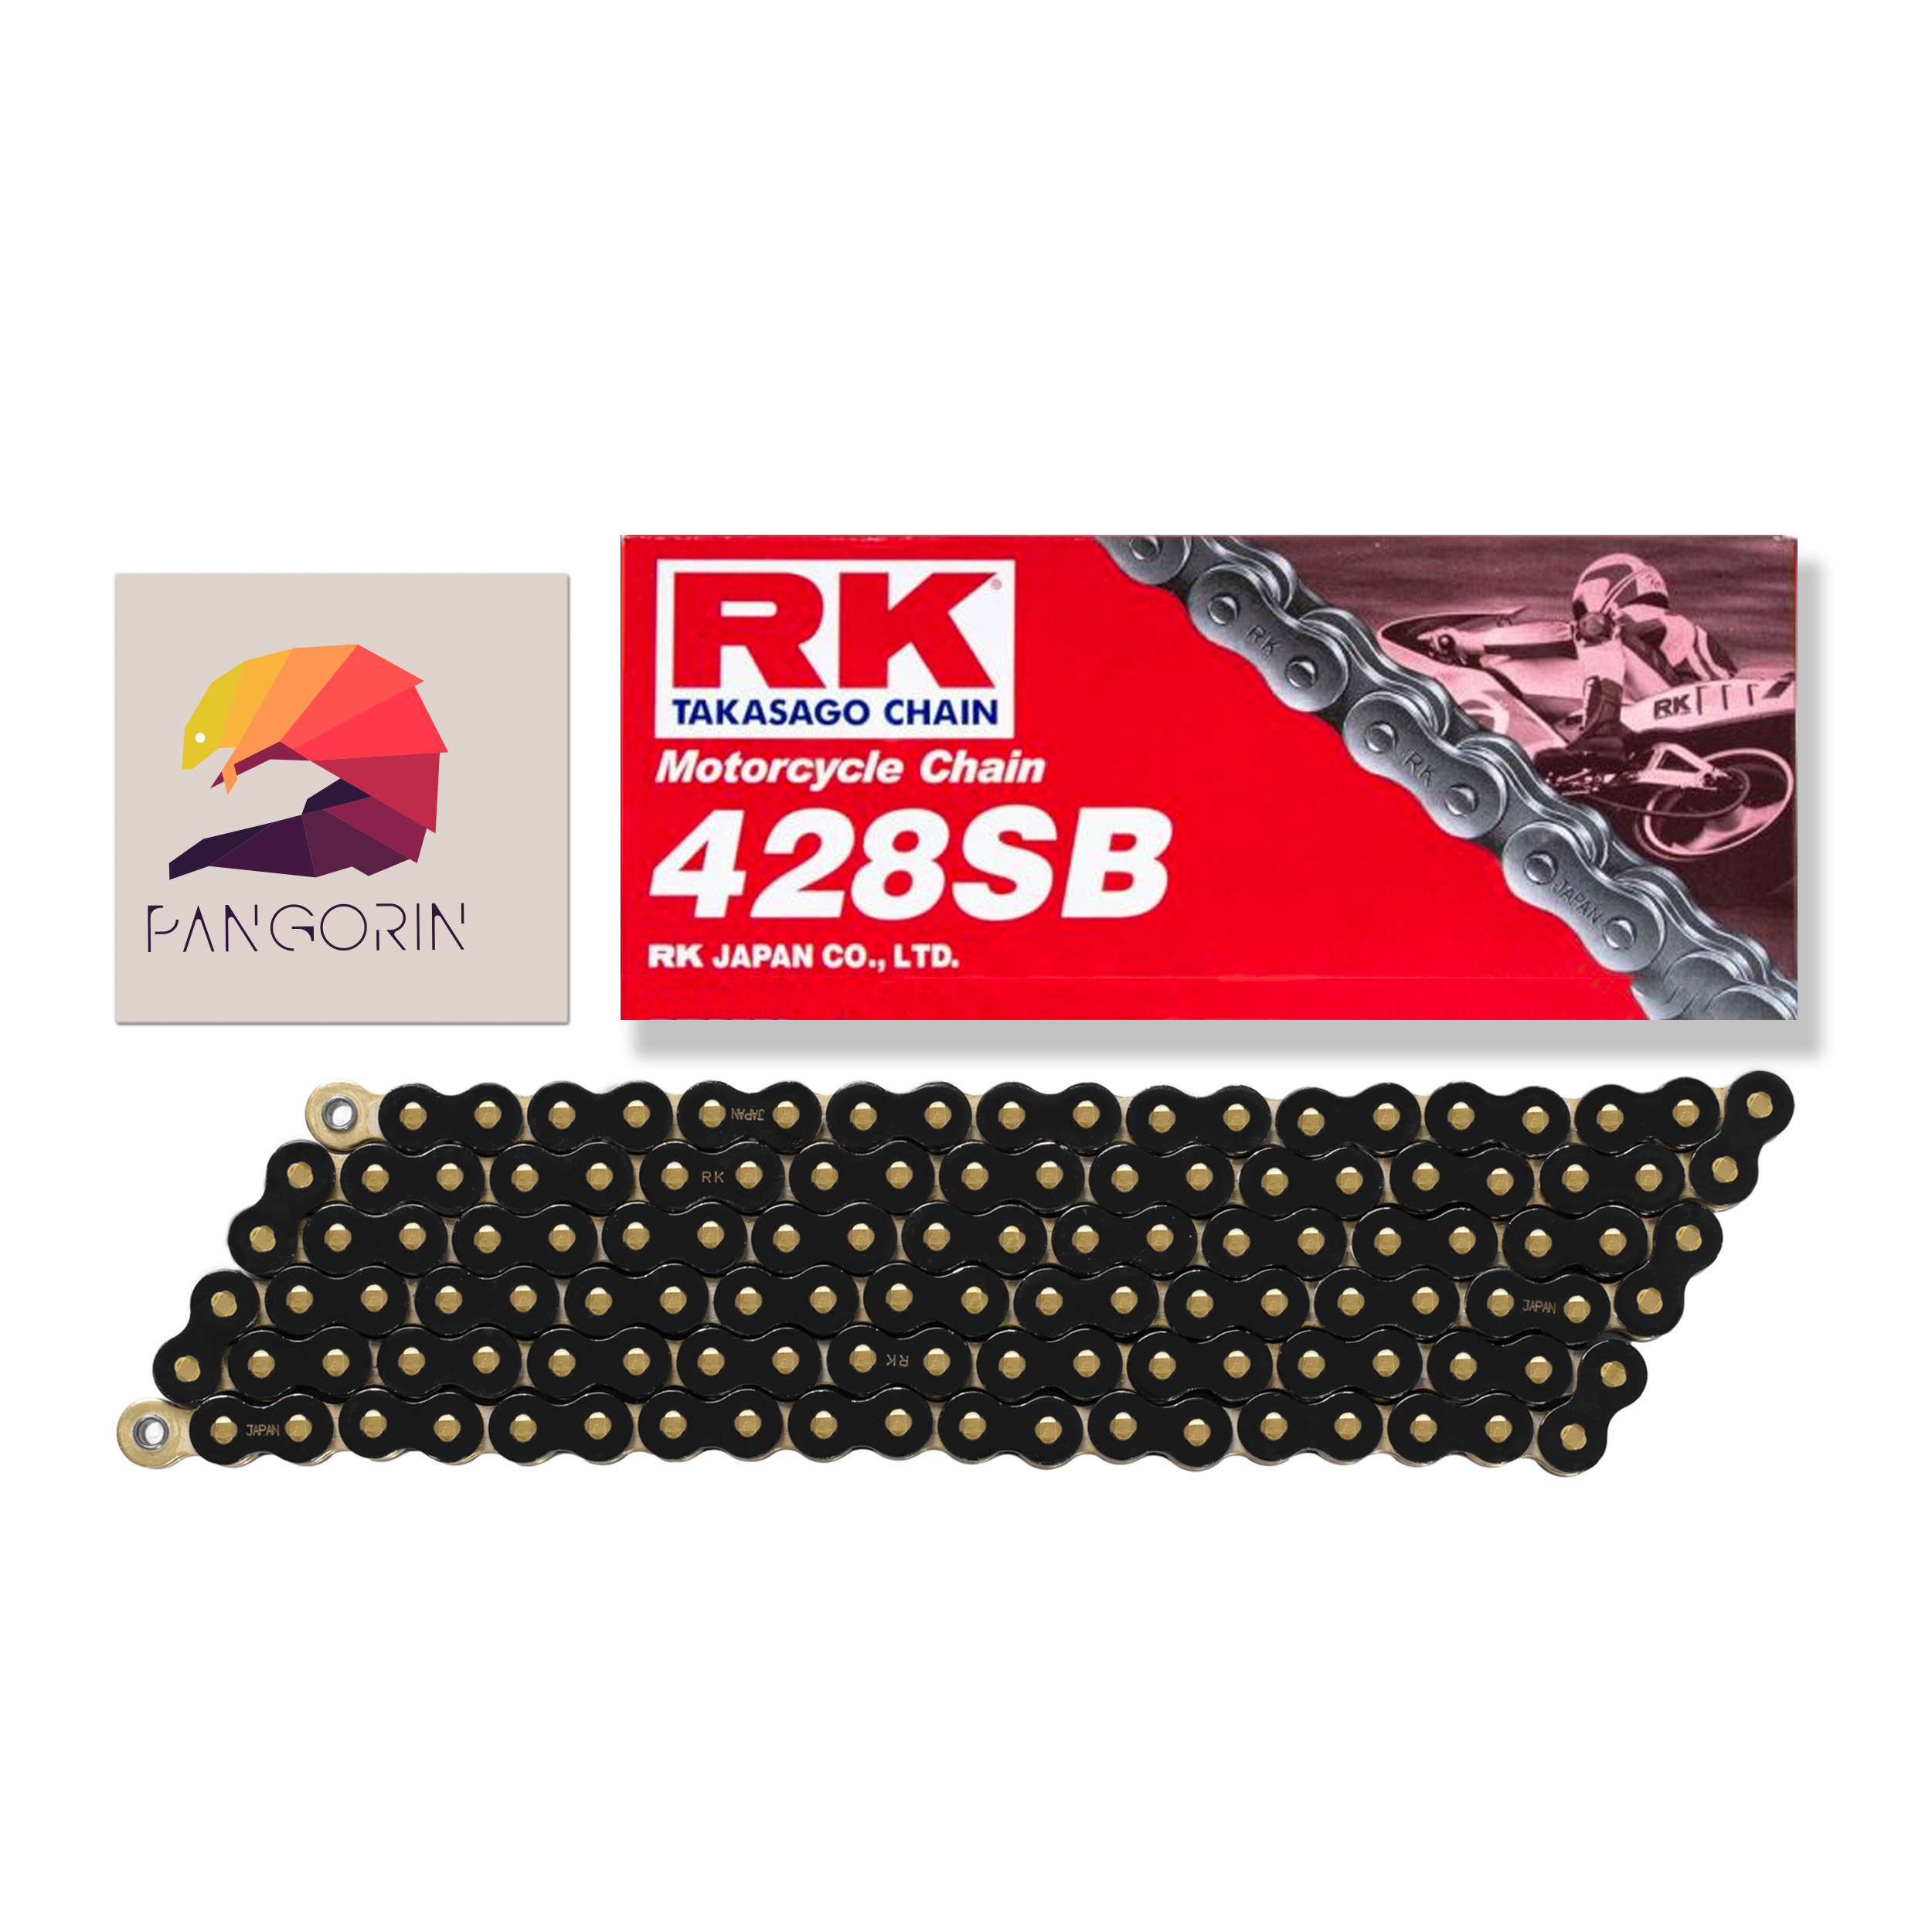 RK chain - Sên Honda CBR150R - 428 SB (Sên 9ly) - Màu Vàng Đen (Black/Gold)